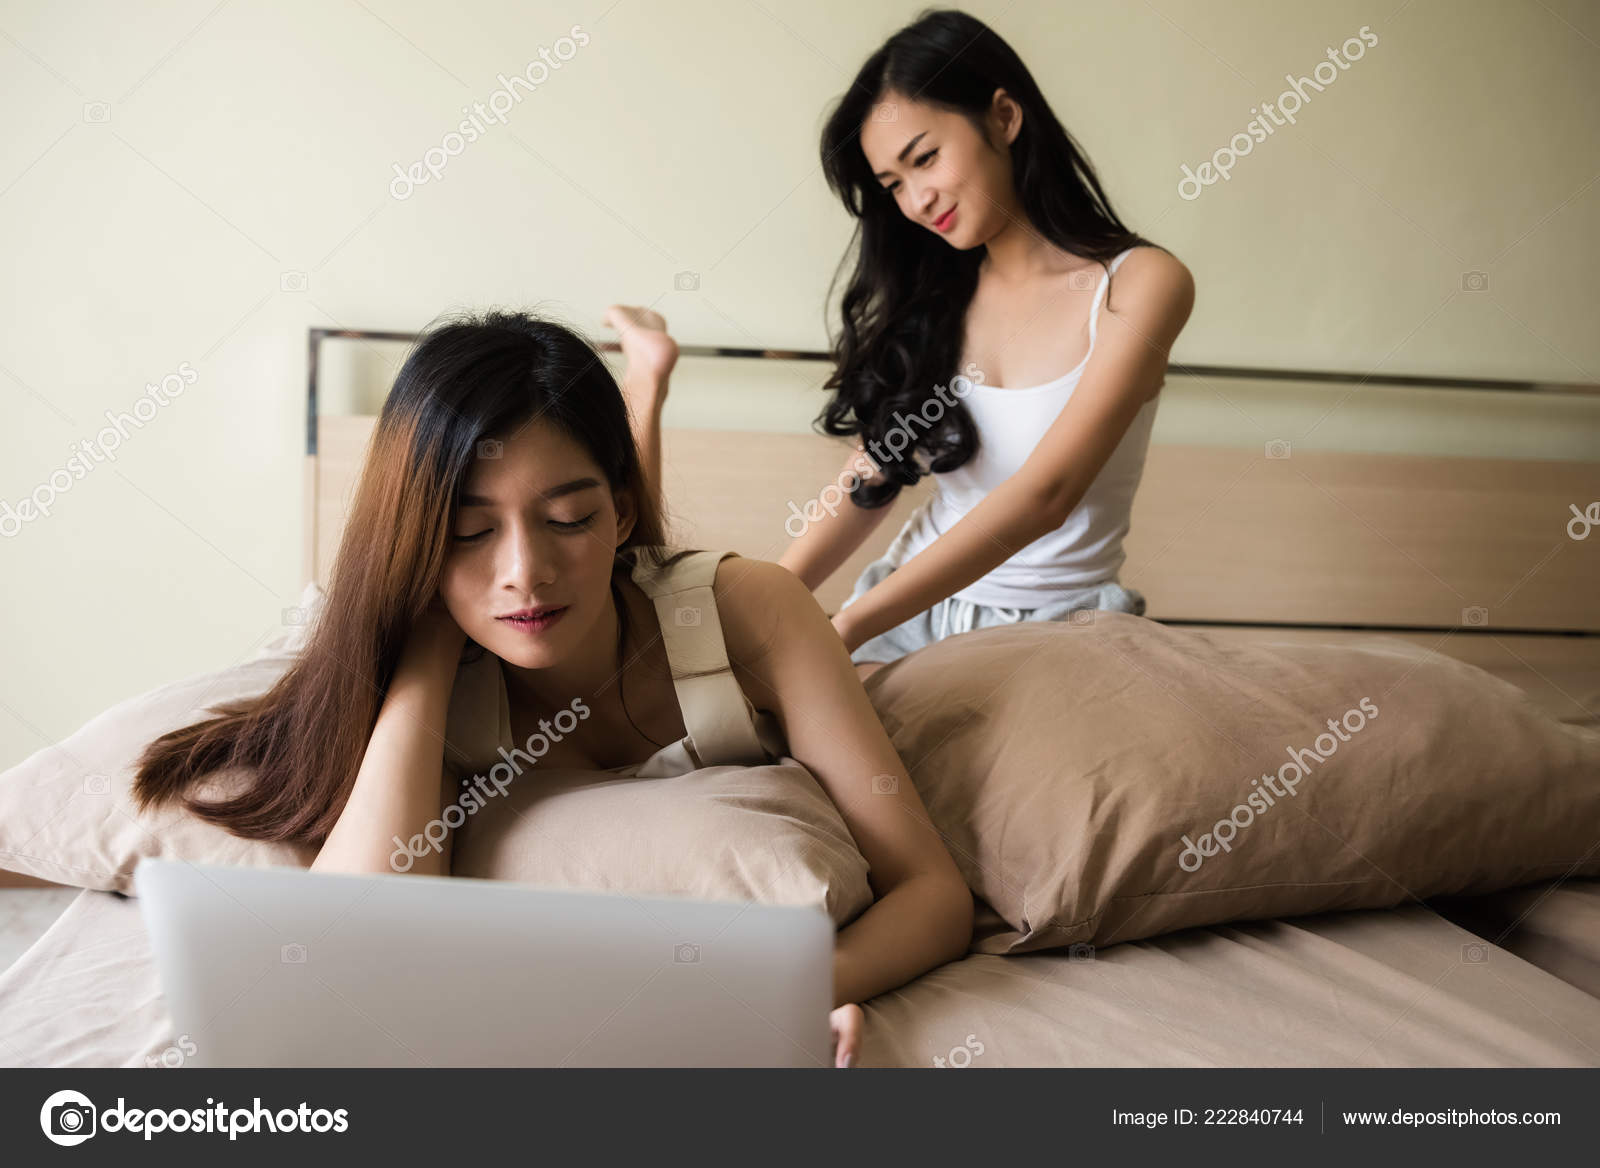 Lesbian Sex Massage - Black Girl Lesbian Massage - Best Sex Photos, Hot Porn ...